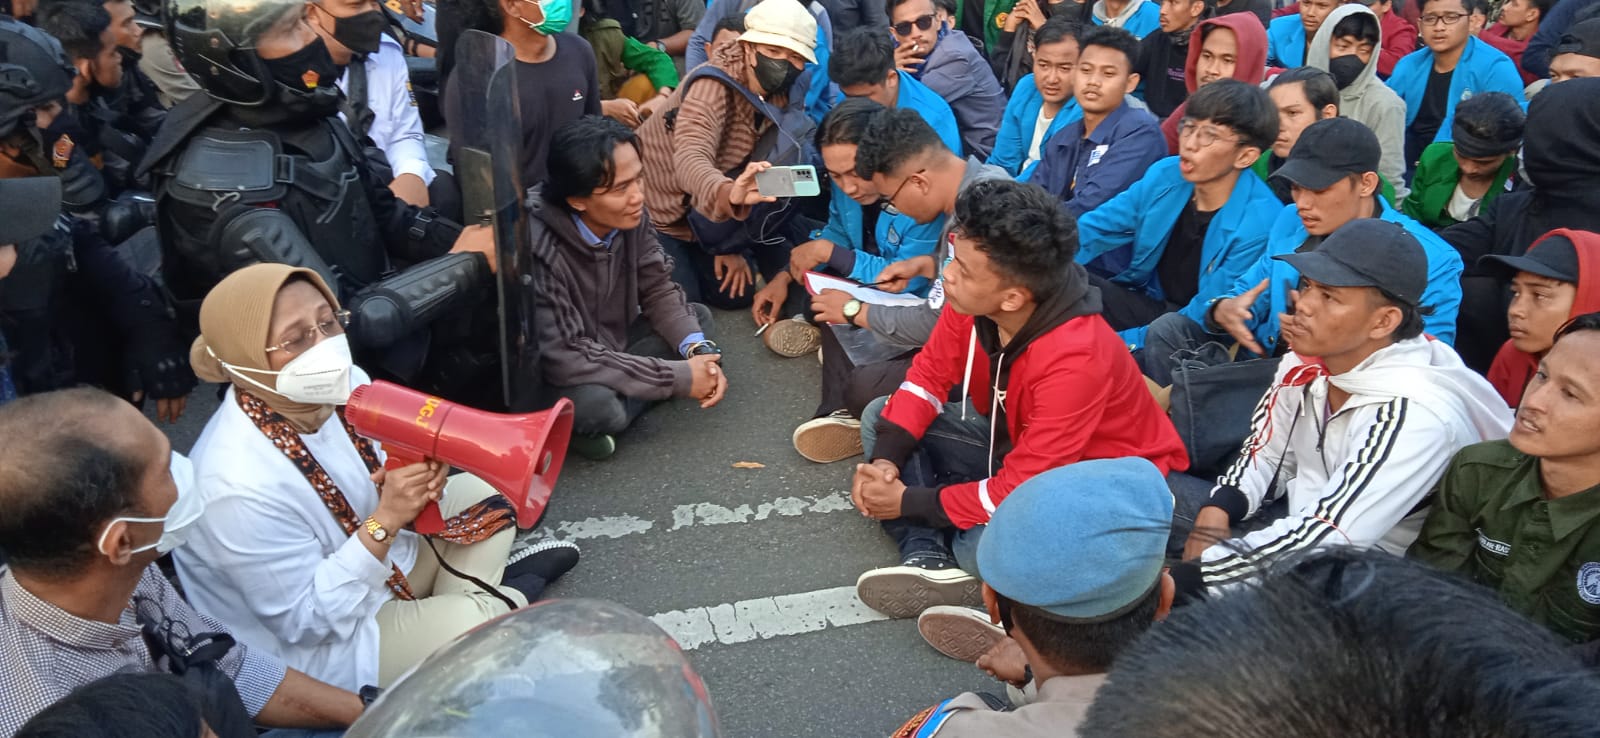 Demo Mahasiswa di Kota Cirebon, Duduk Bersama Ditemui Ketua DPRD